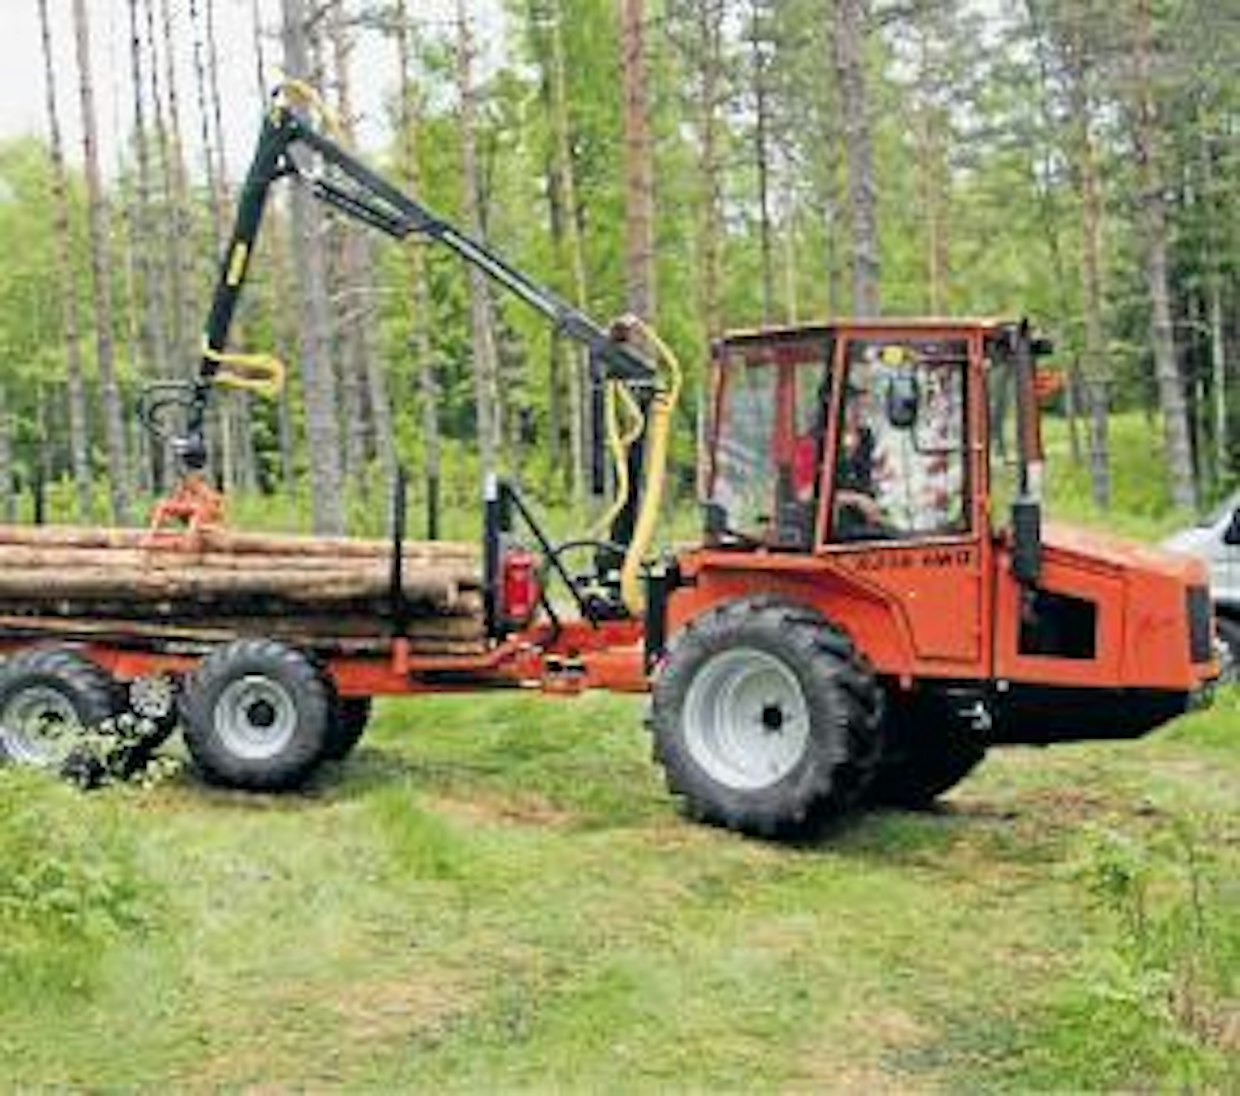 WoodTiger perustuu kiinalaiseen Dong Feng -traktoriin, jota on tuotu Ruotsiin jo useiden vuosien ajan. Traktorista on tehty metsäkone poistamlla siitä etuakseli ja kiinnittämällä pieni metsäperävaunu ohjattavan runkonivelen avulla sen perään. Samalla periaatteella on  alkanut monen muunkin metsäkonemerkin alkutaival. Traktorissa on 30 hv moottori ja mekaaninen vaihteisto, myös suunanvaihto vaatii kytkimen käytön. Dong Fengin maahantuoja Traktor Import Ab on tähän mennessä rakentanut 14 metsäkonetta. Myyntihinta on noin 55 000 €. (UO)